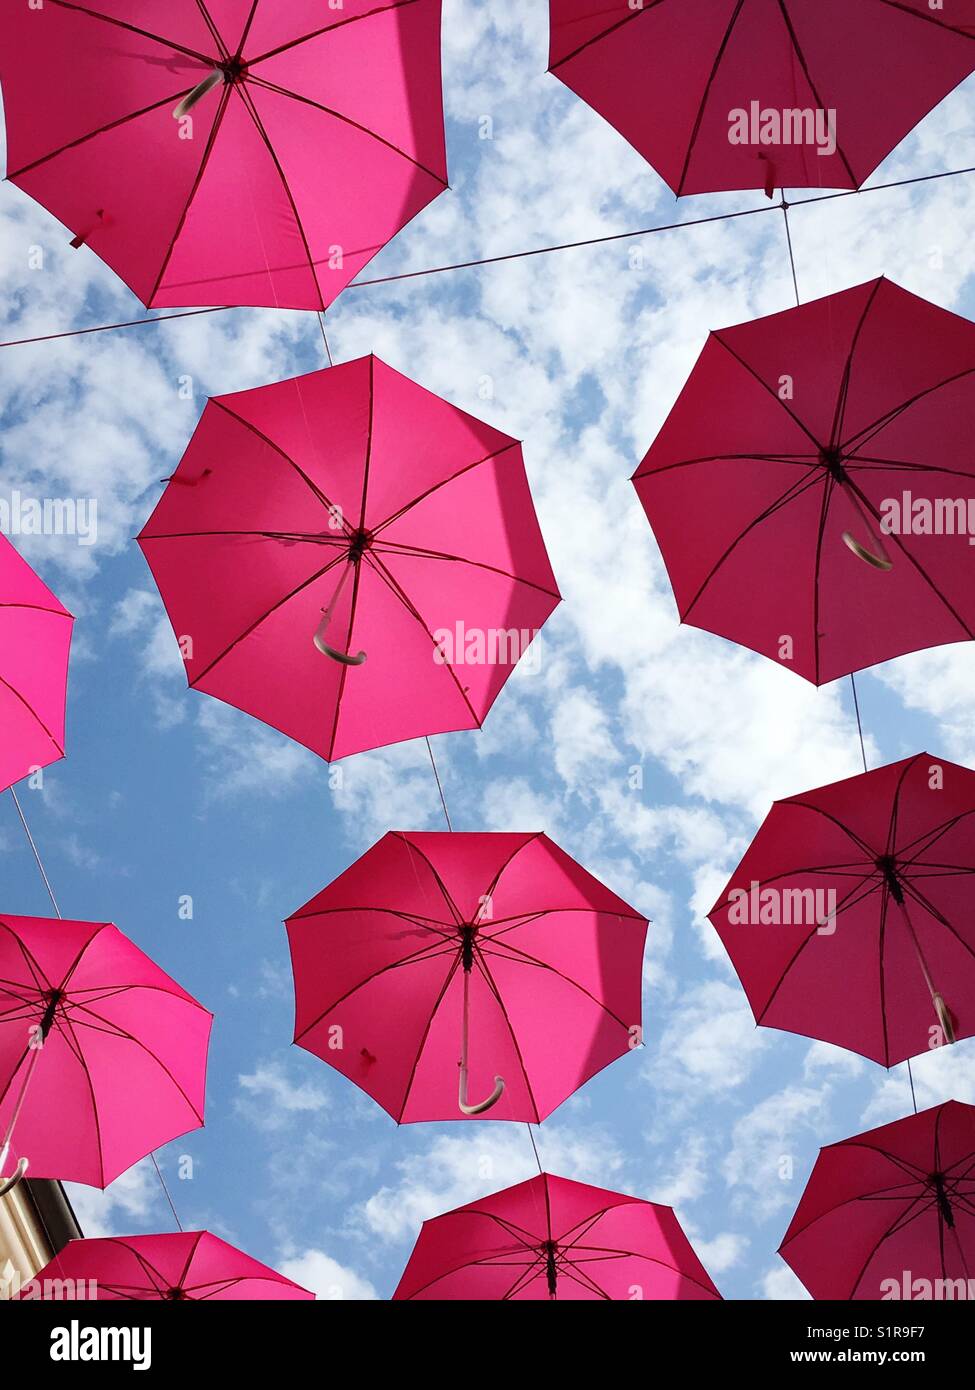 Ombrelli rosa appesi immagini e fotografie stock ad alta risoluzione - Alamy